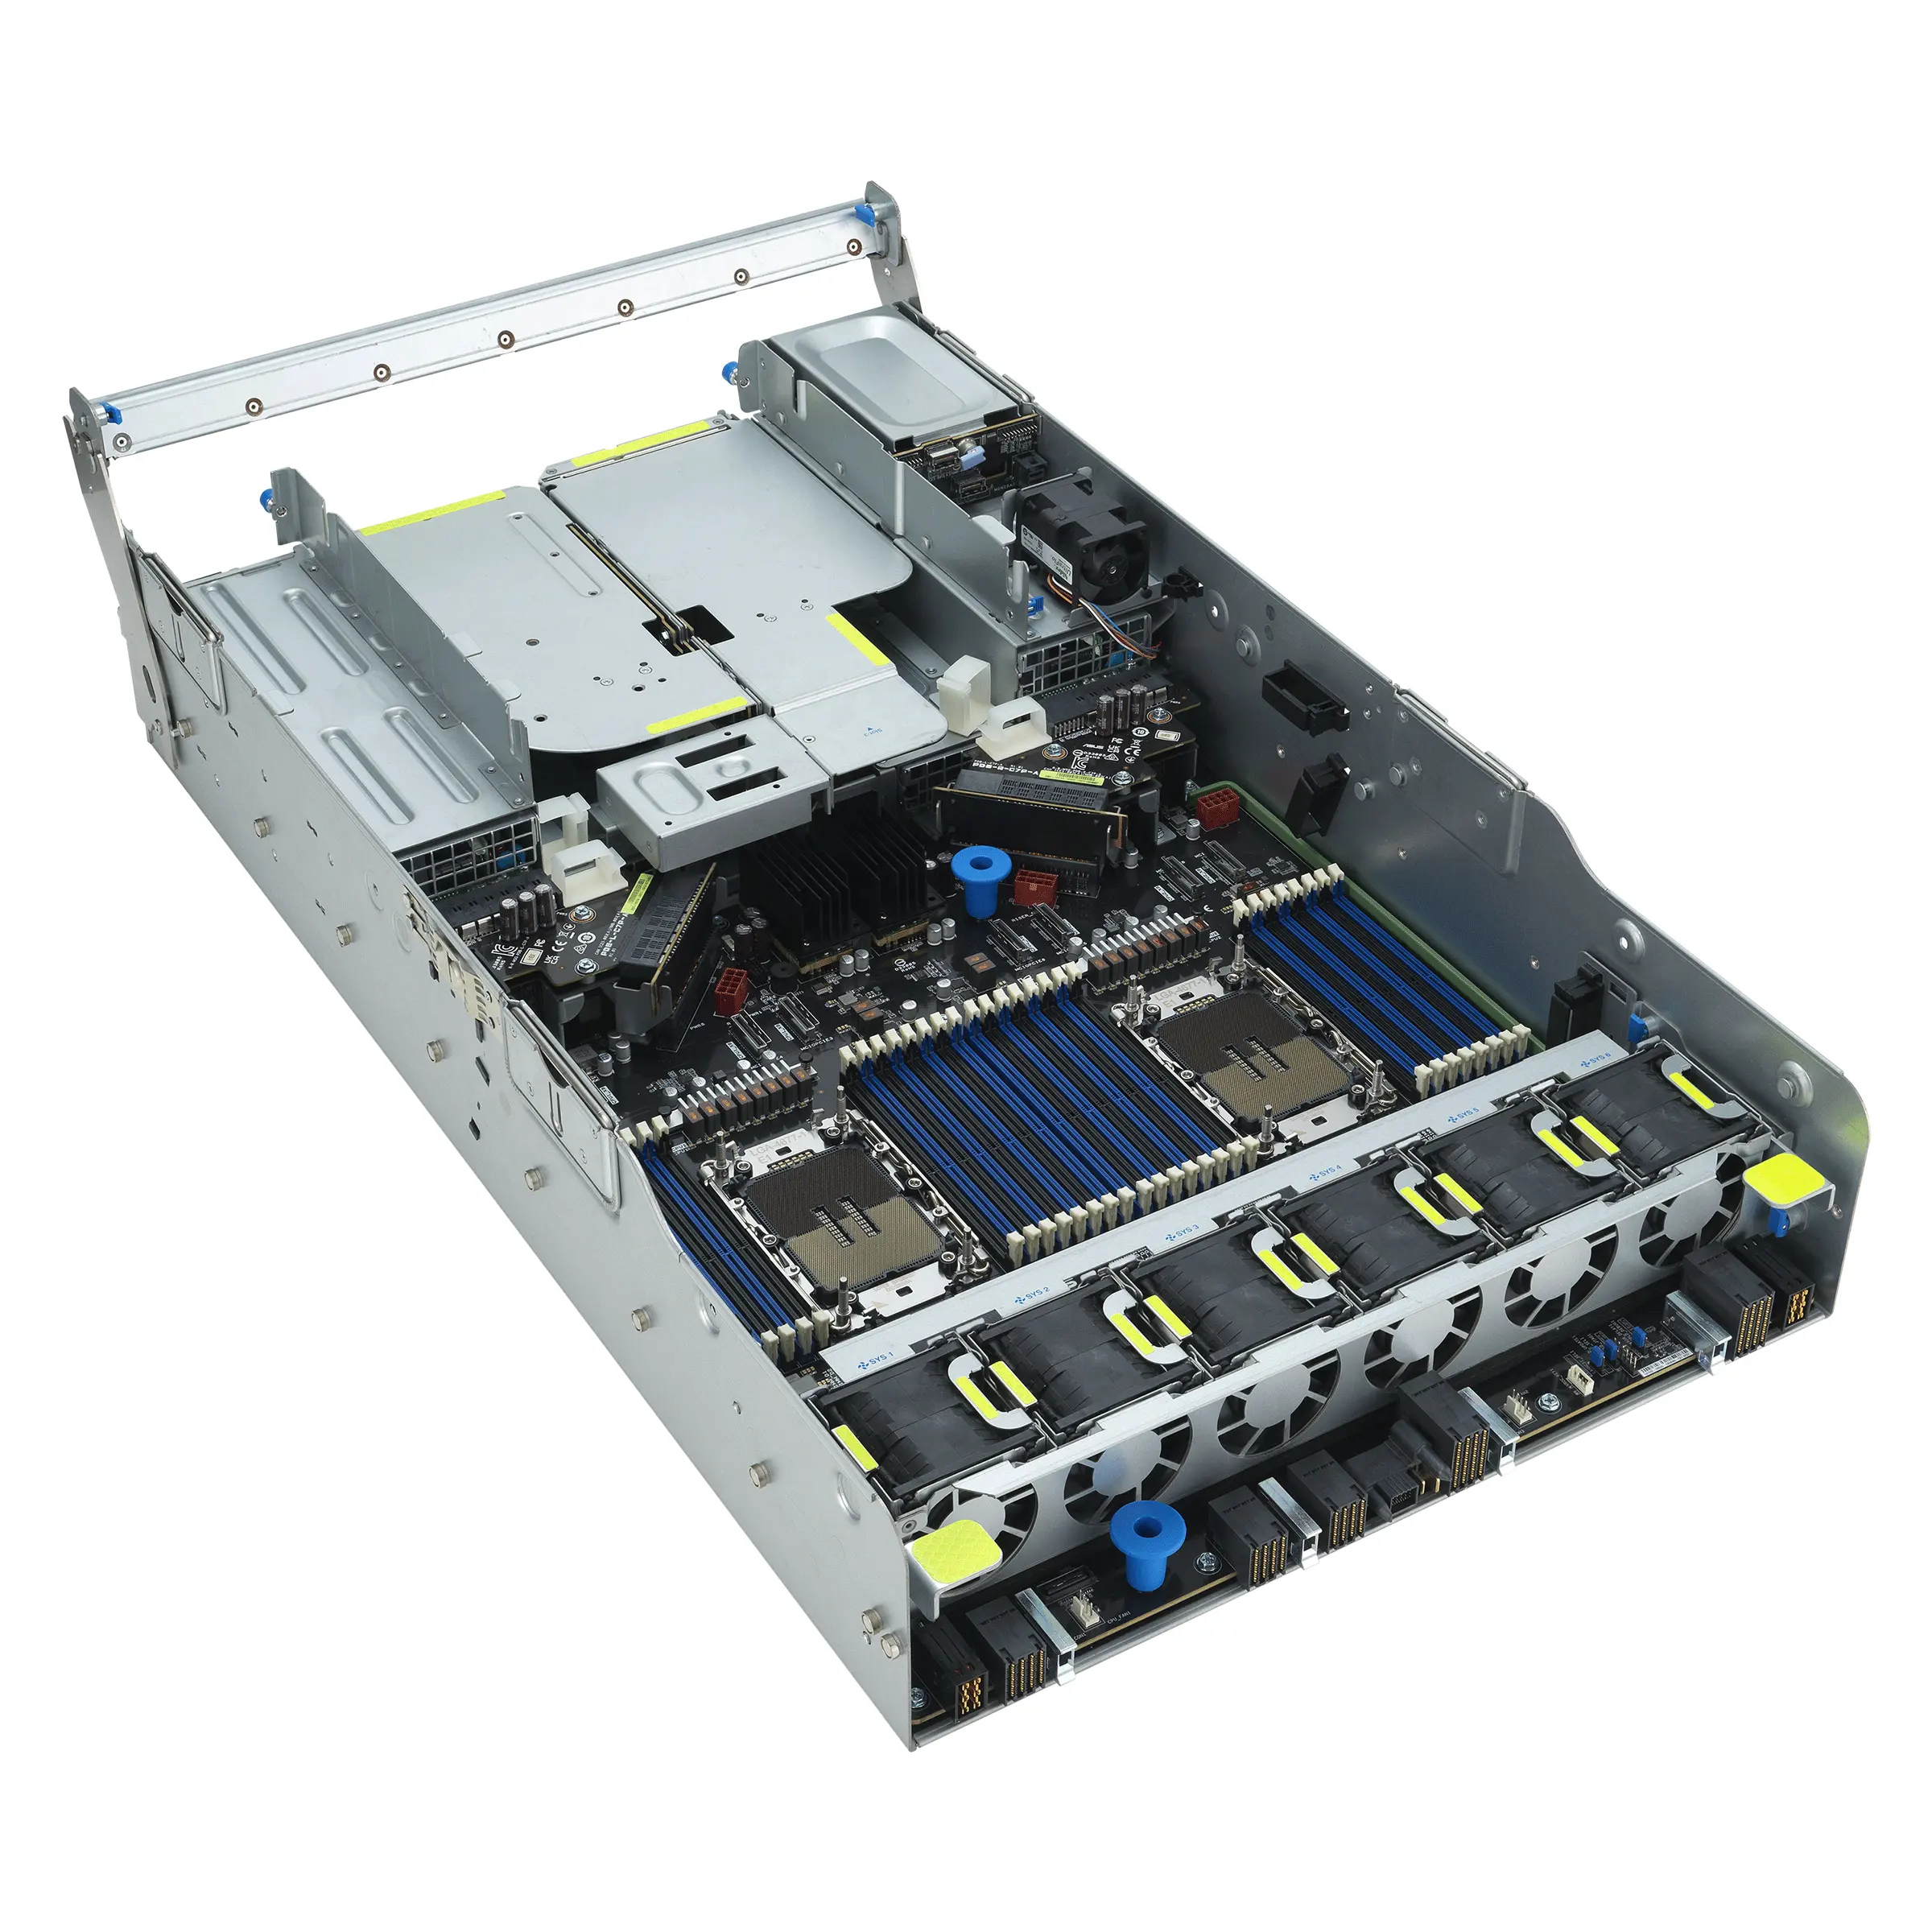 오리지널 슈퍼마이크로 A + 서버 2124gq-Nart 2u 엔비디아 Hgx A100 As-2124gq-Nart-Lcc 듀얼 프로세서 전체 GPU 시스템 랙 서버